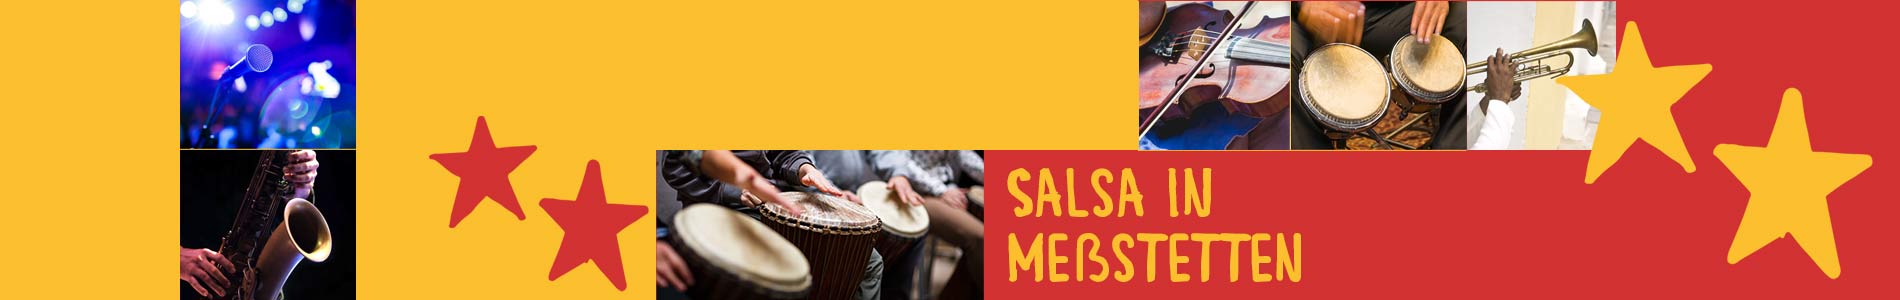 Salsa in Meßstetten – Salsa lernen und tanzen, Tanzkurse, Partys, Veranstaltungen